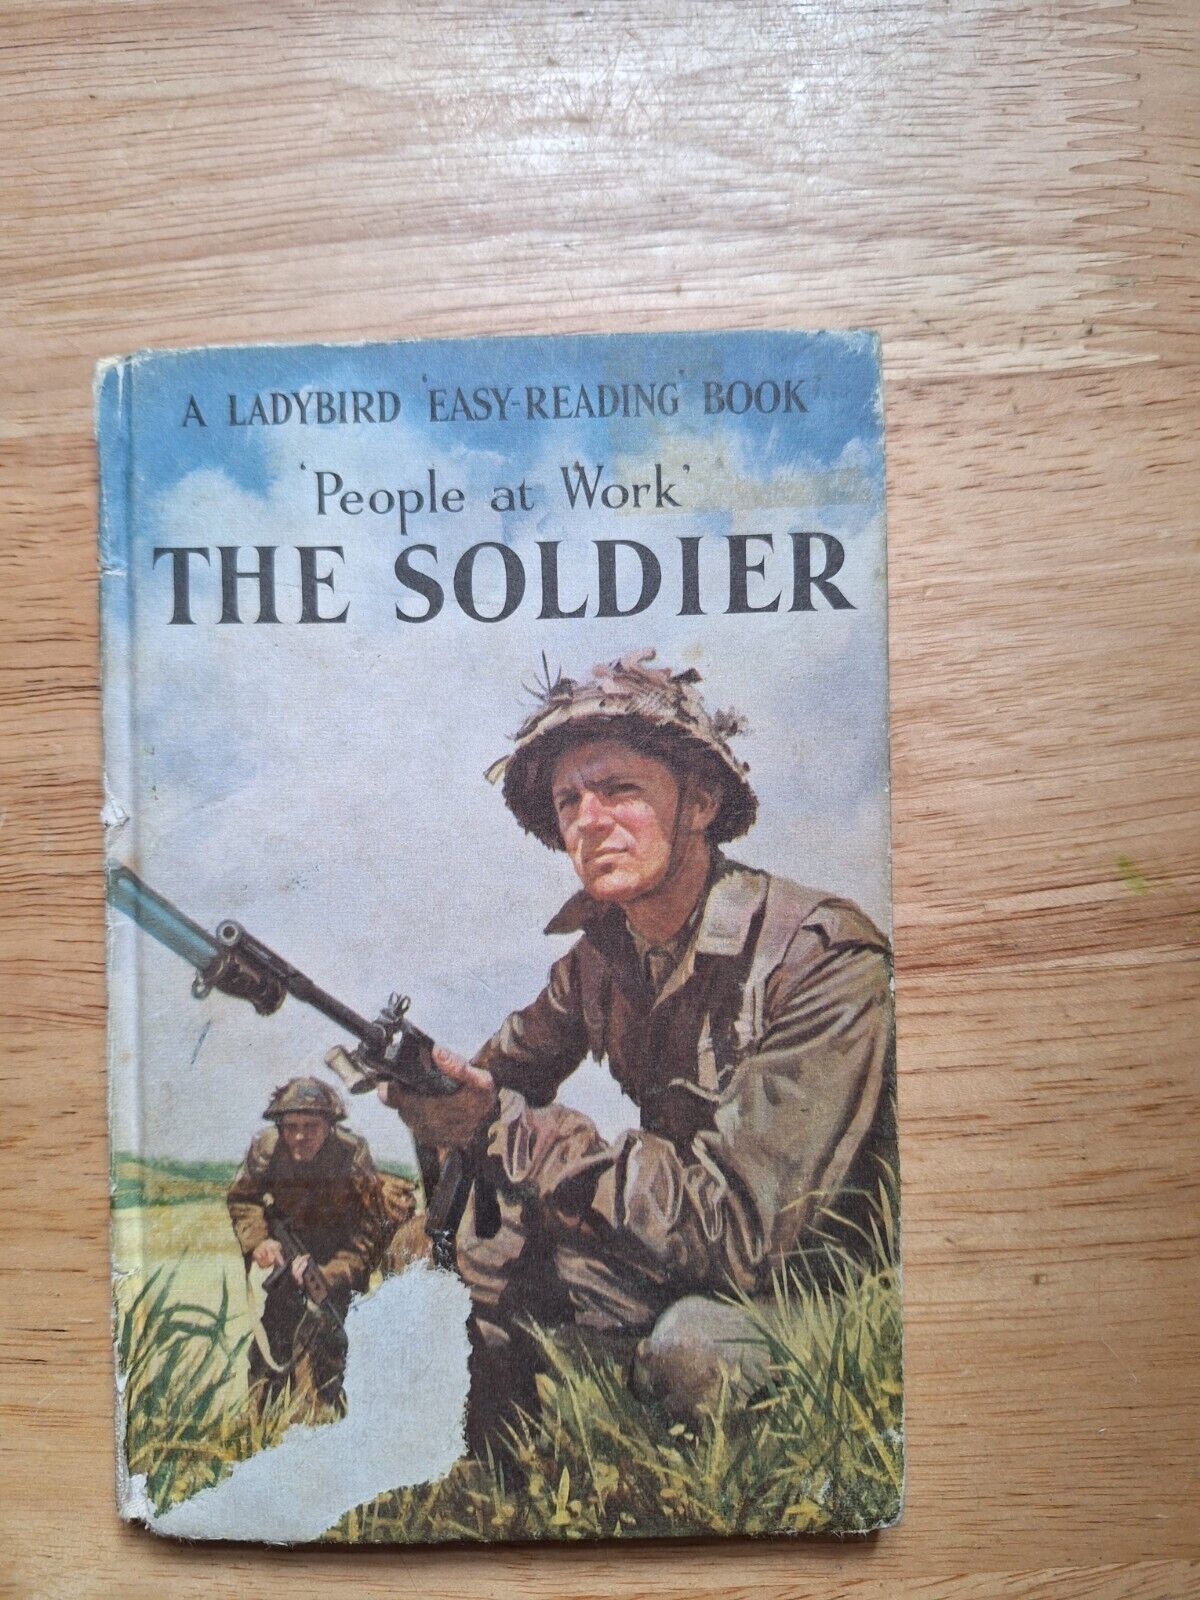 Vintage 1960s People at Work Soldier Ladybird book 2/6 Series